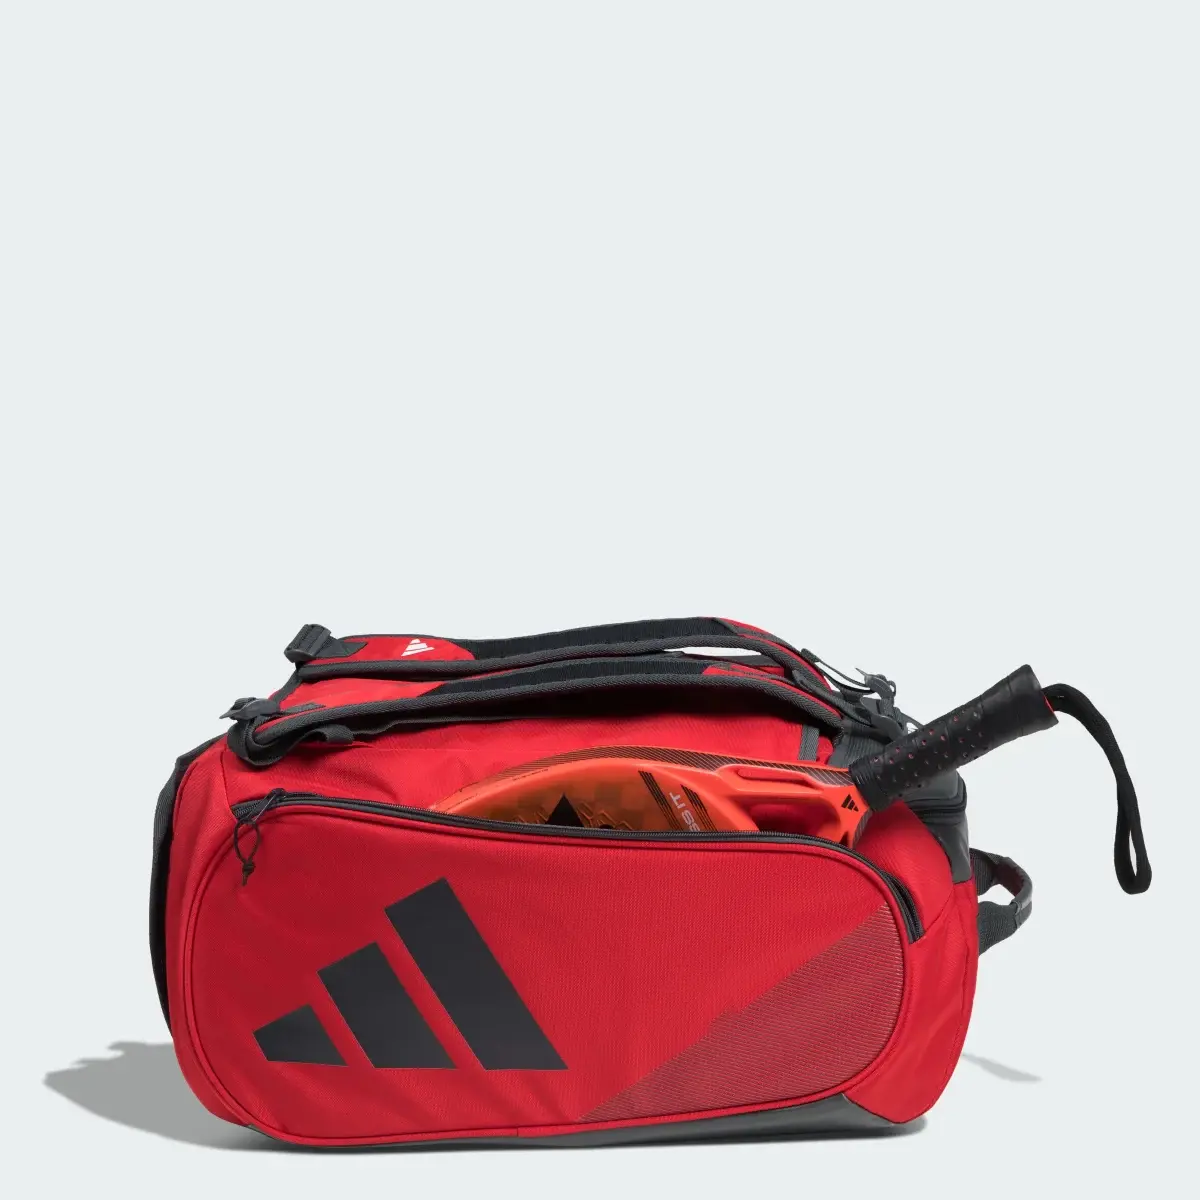 Adidas Solar Red Tour 3.3 Padel-Tennis Rucksack. 1